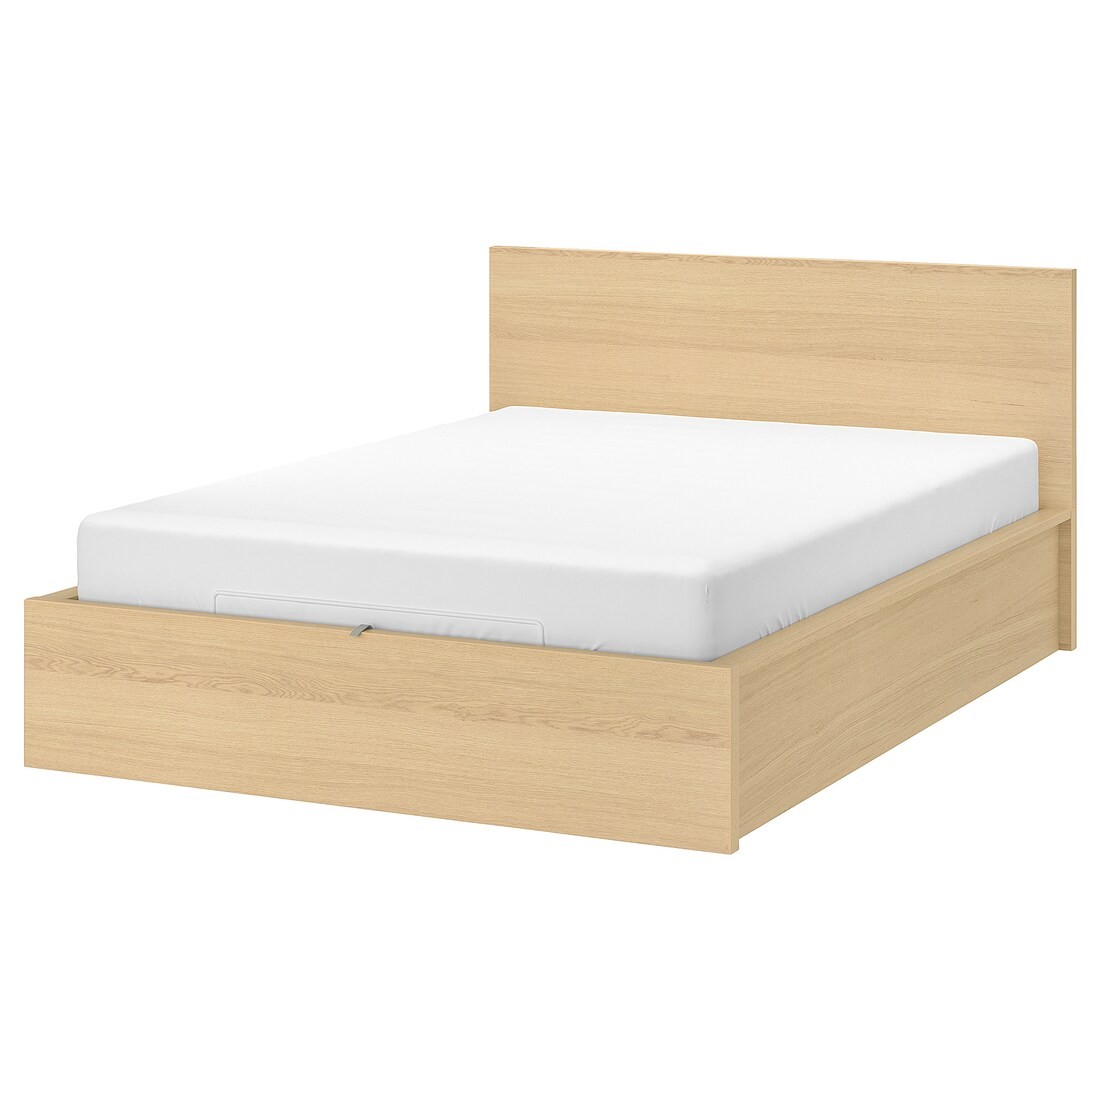 IKEA MALM МАЛЬМ Ліжко двоспальне з підйомним механізмом, шпон дуба білений, 180x200 см 70412682 | 704.126.82